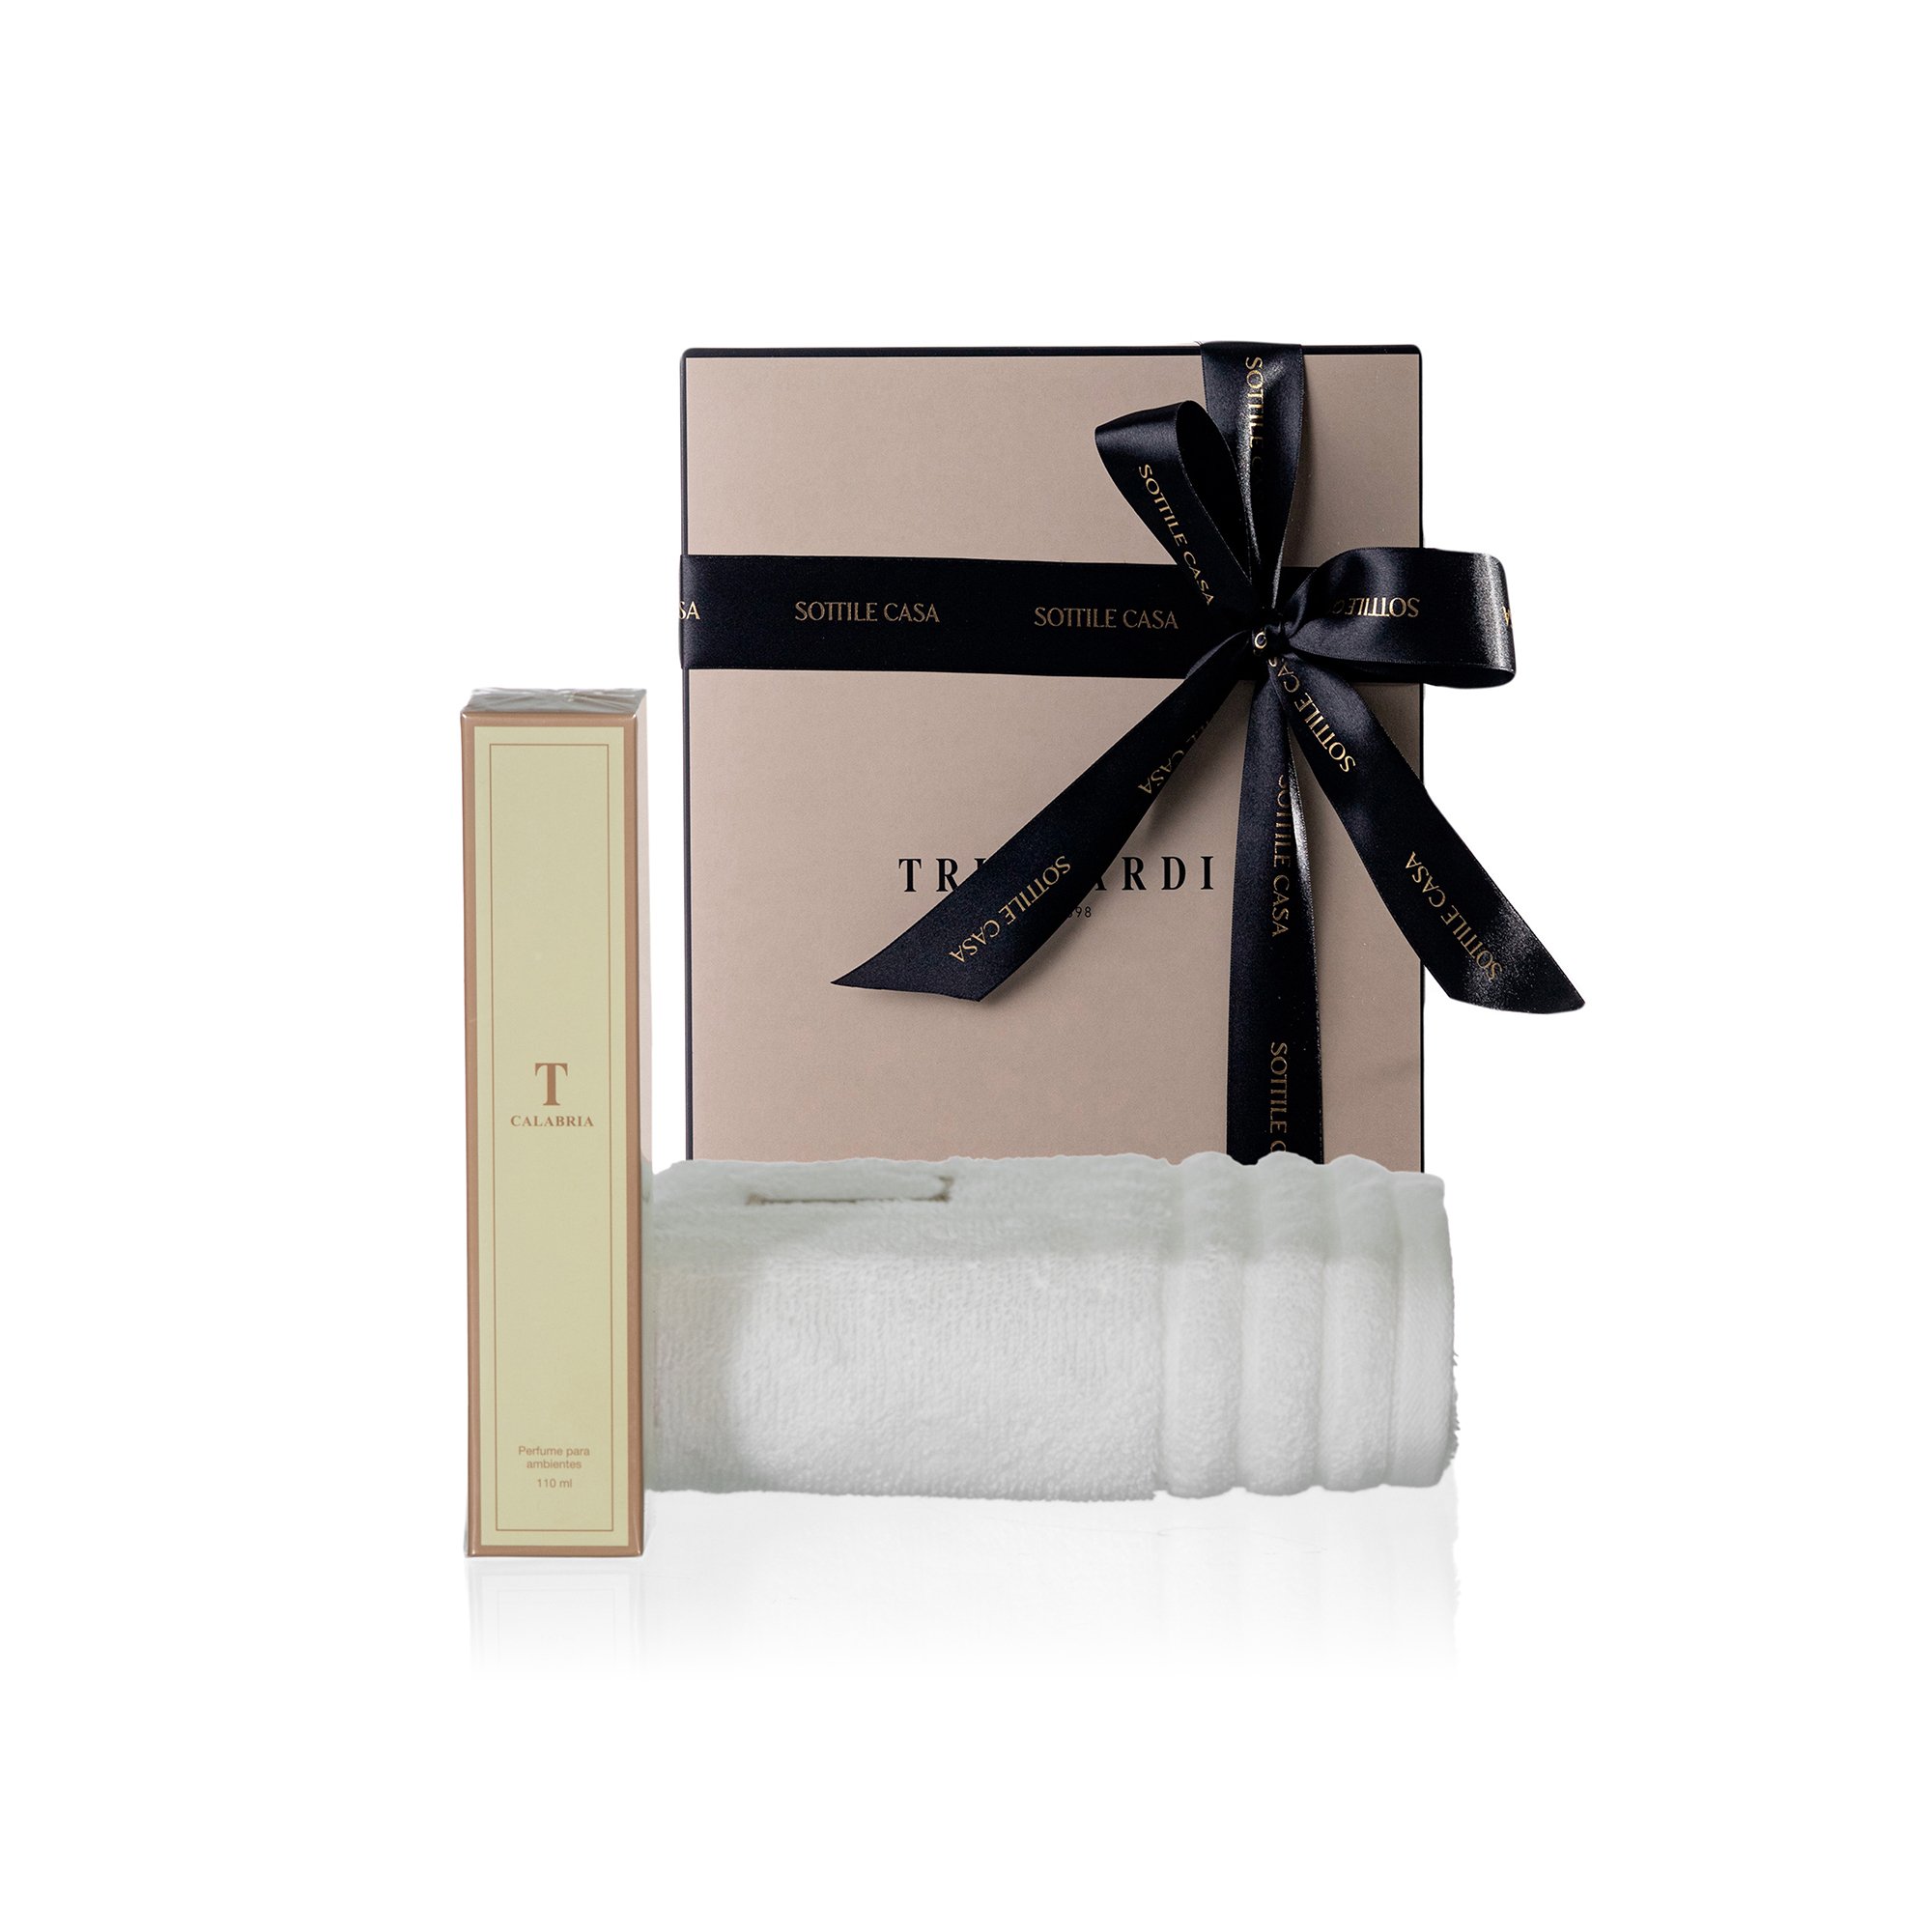 kit toalha de rosto 100 algodao trussardi imperiale branco com perfume para ambientes trussardi 110ml calabria com caixa de presente 2